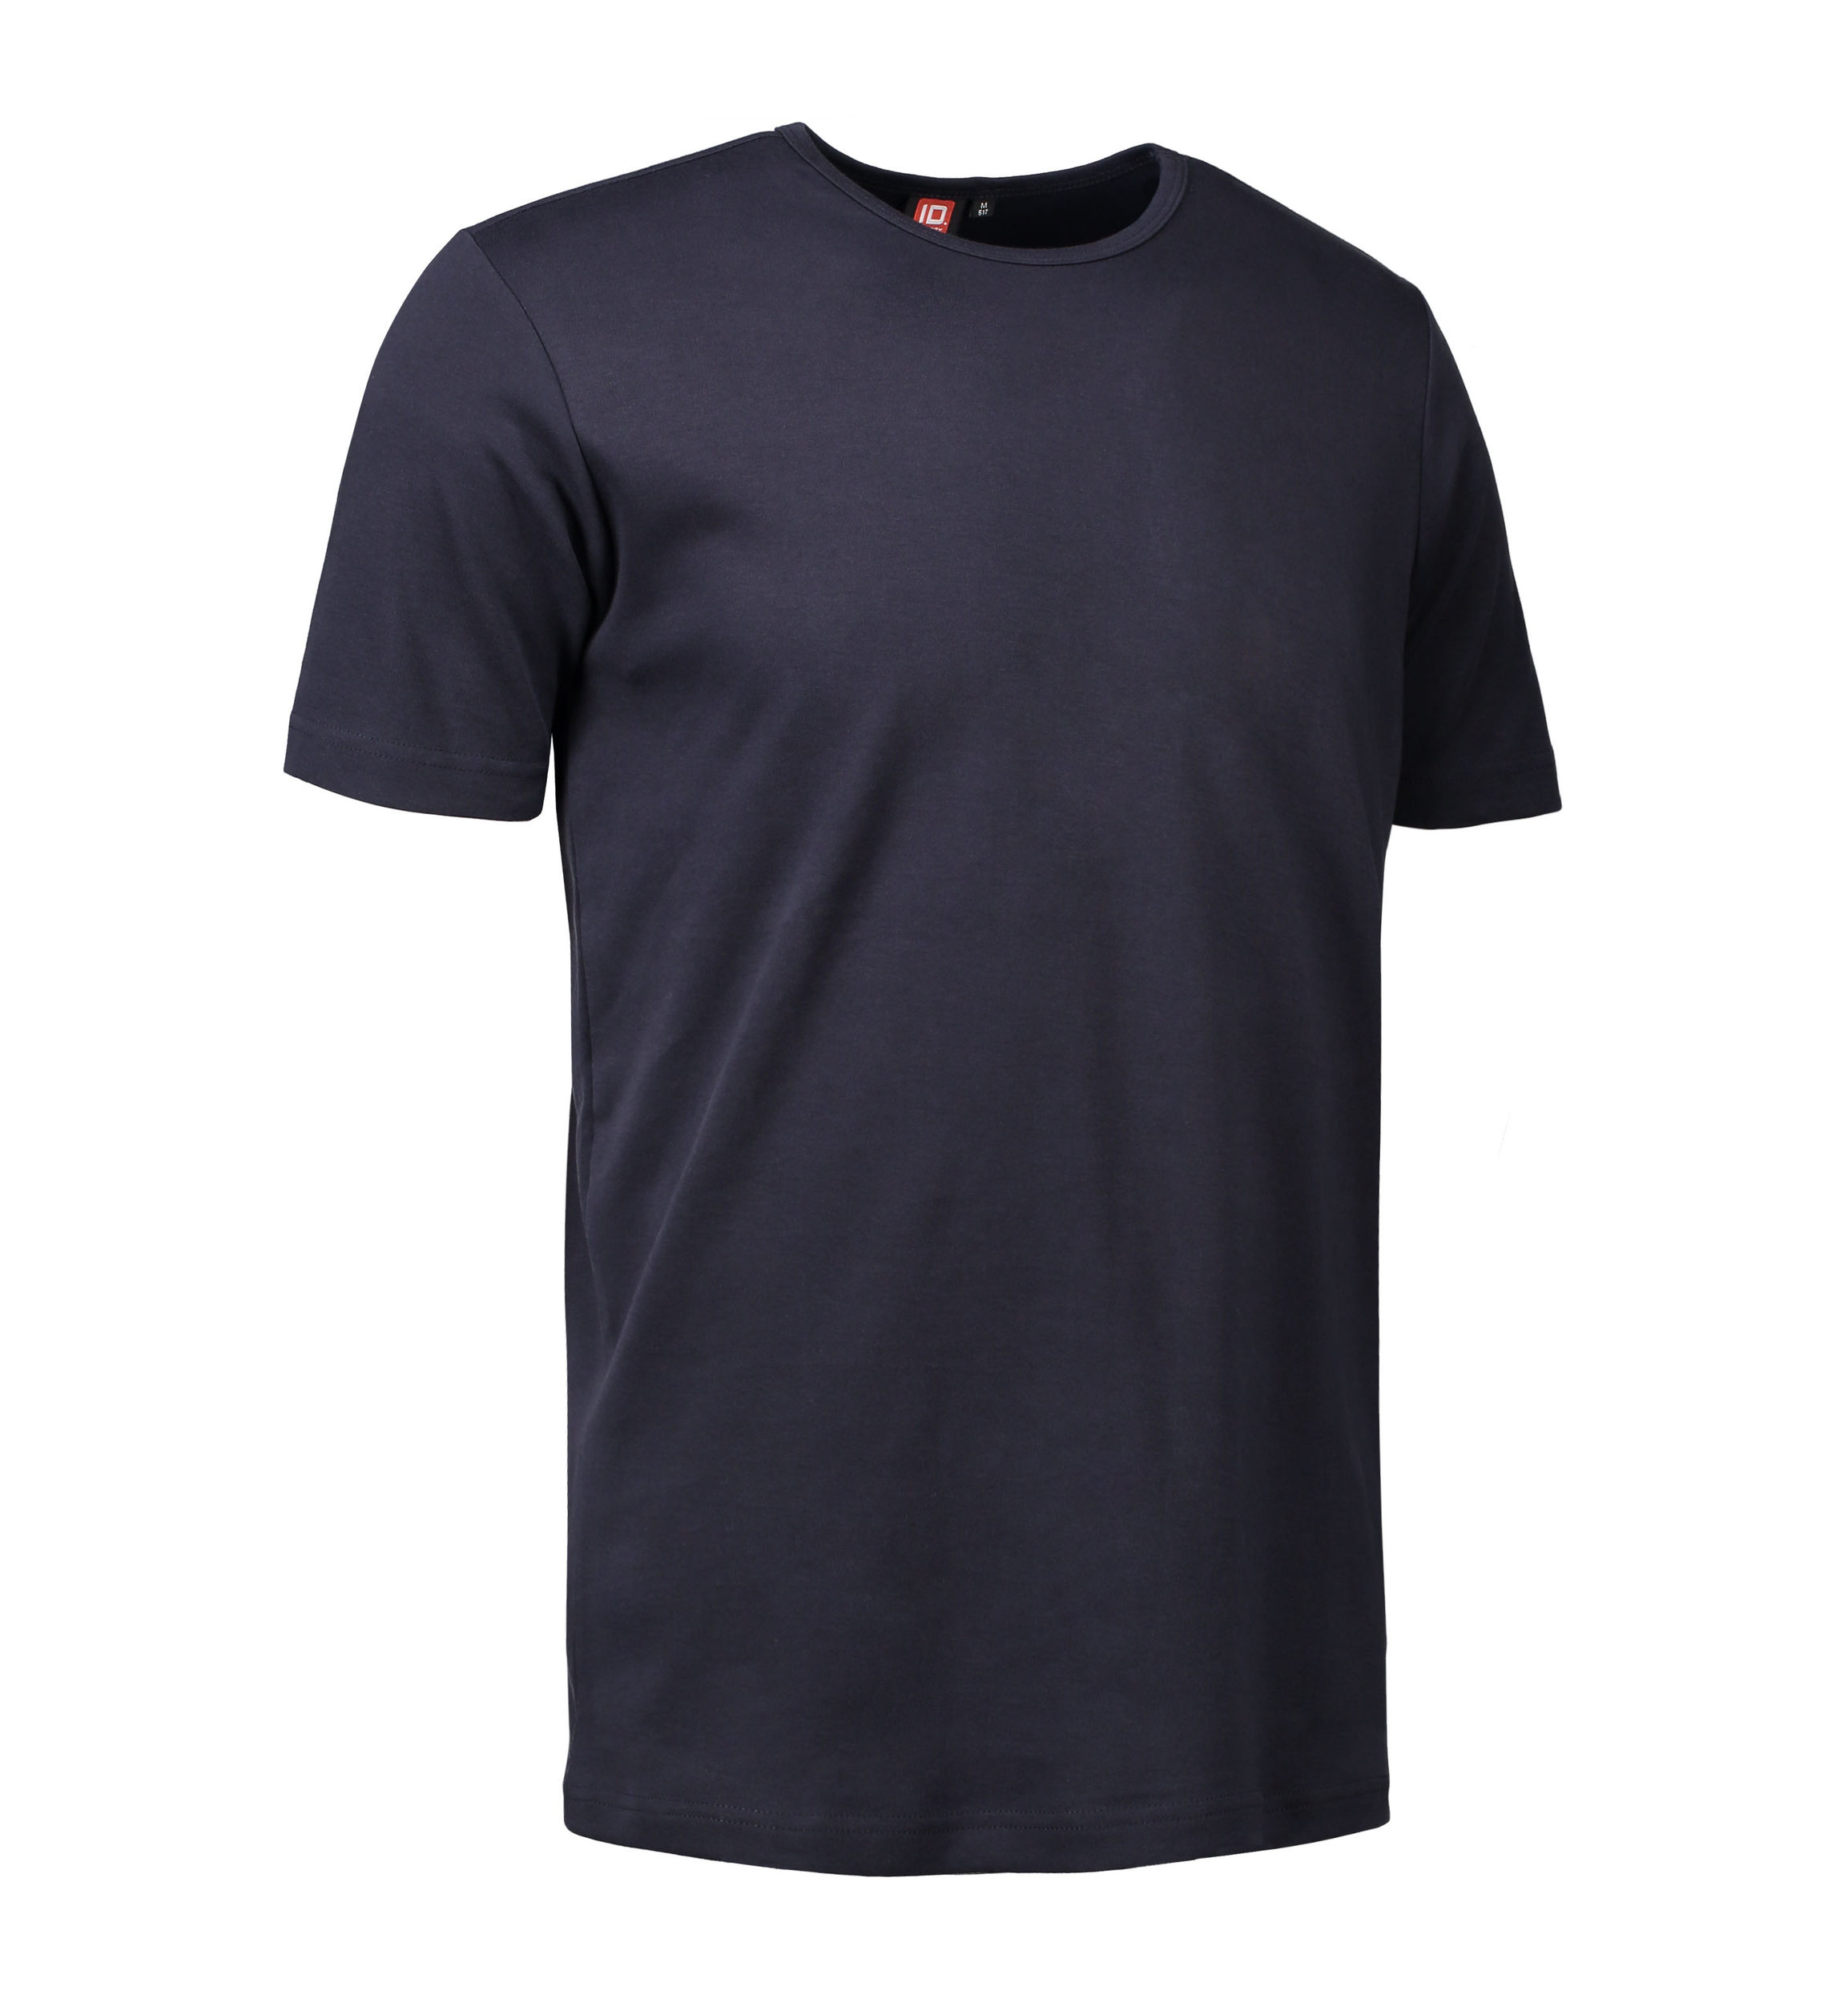 Billede af Navy t-shirt med rund hals til mænd - 3XL hos Sygeplejebutikken.dk